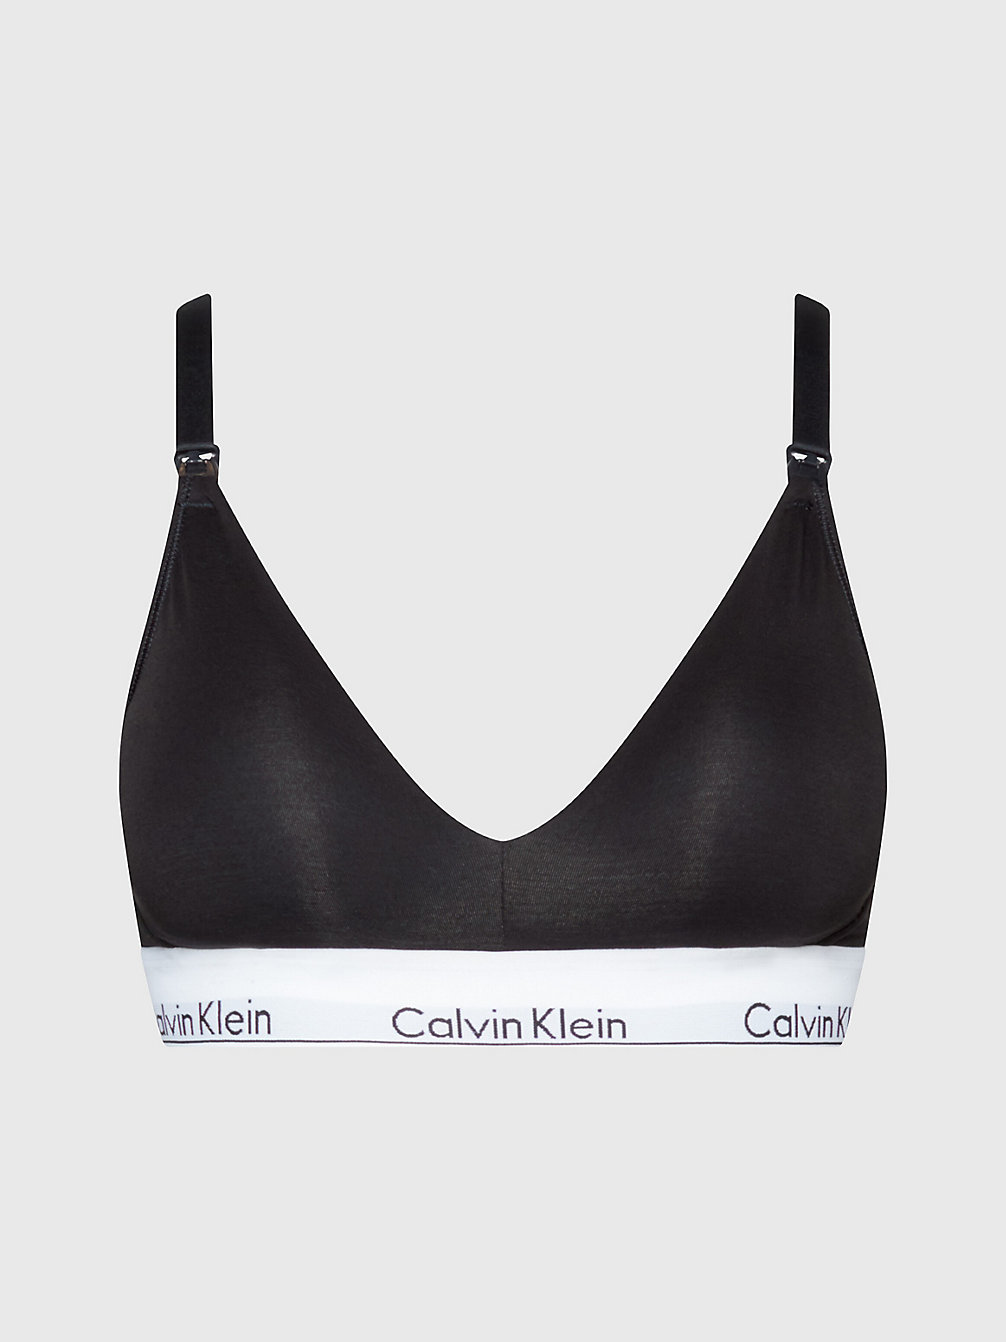 BLACK > Still-Bh - Modern Cotton > undefined Damen - Calvin Klein